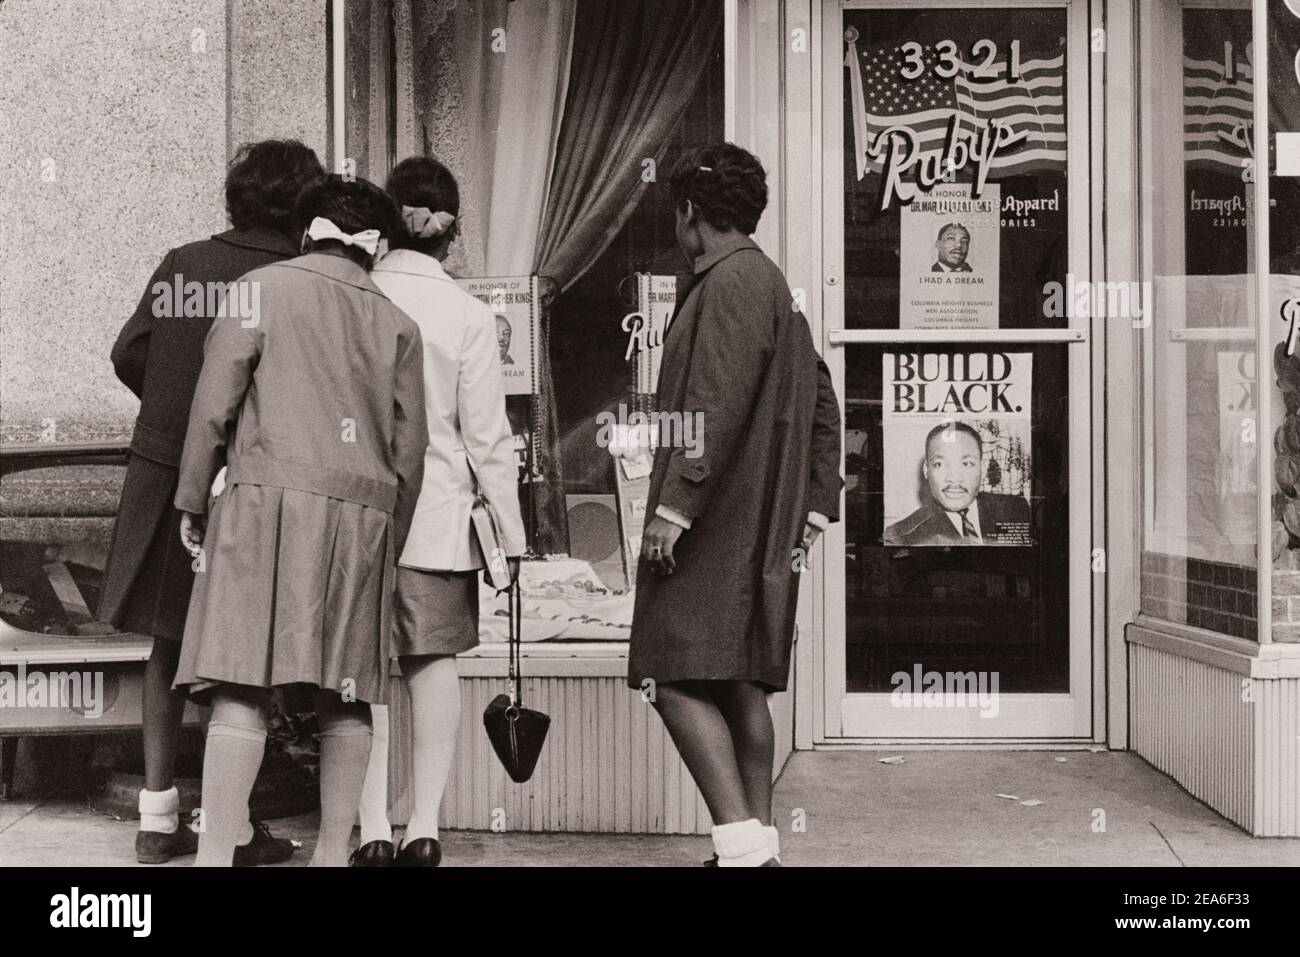 Photo d'époque des affiches Martin Luther King sur la vitrine du magasin. Panneaux « Don't Work » pour Martin L. King. ÉTATS-UNIS. 3 avril 1969 Banque D'Images